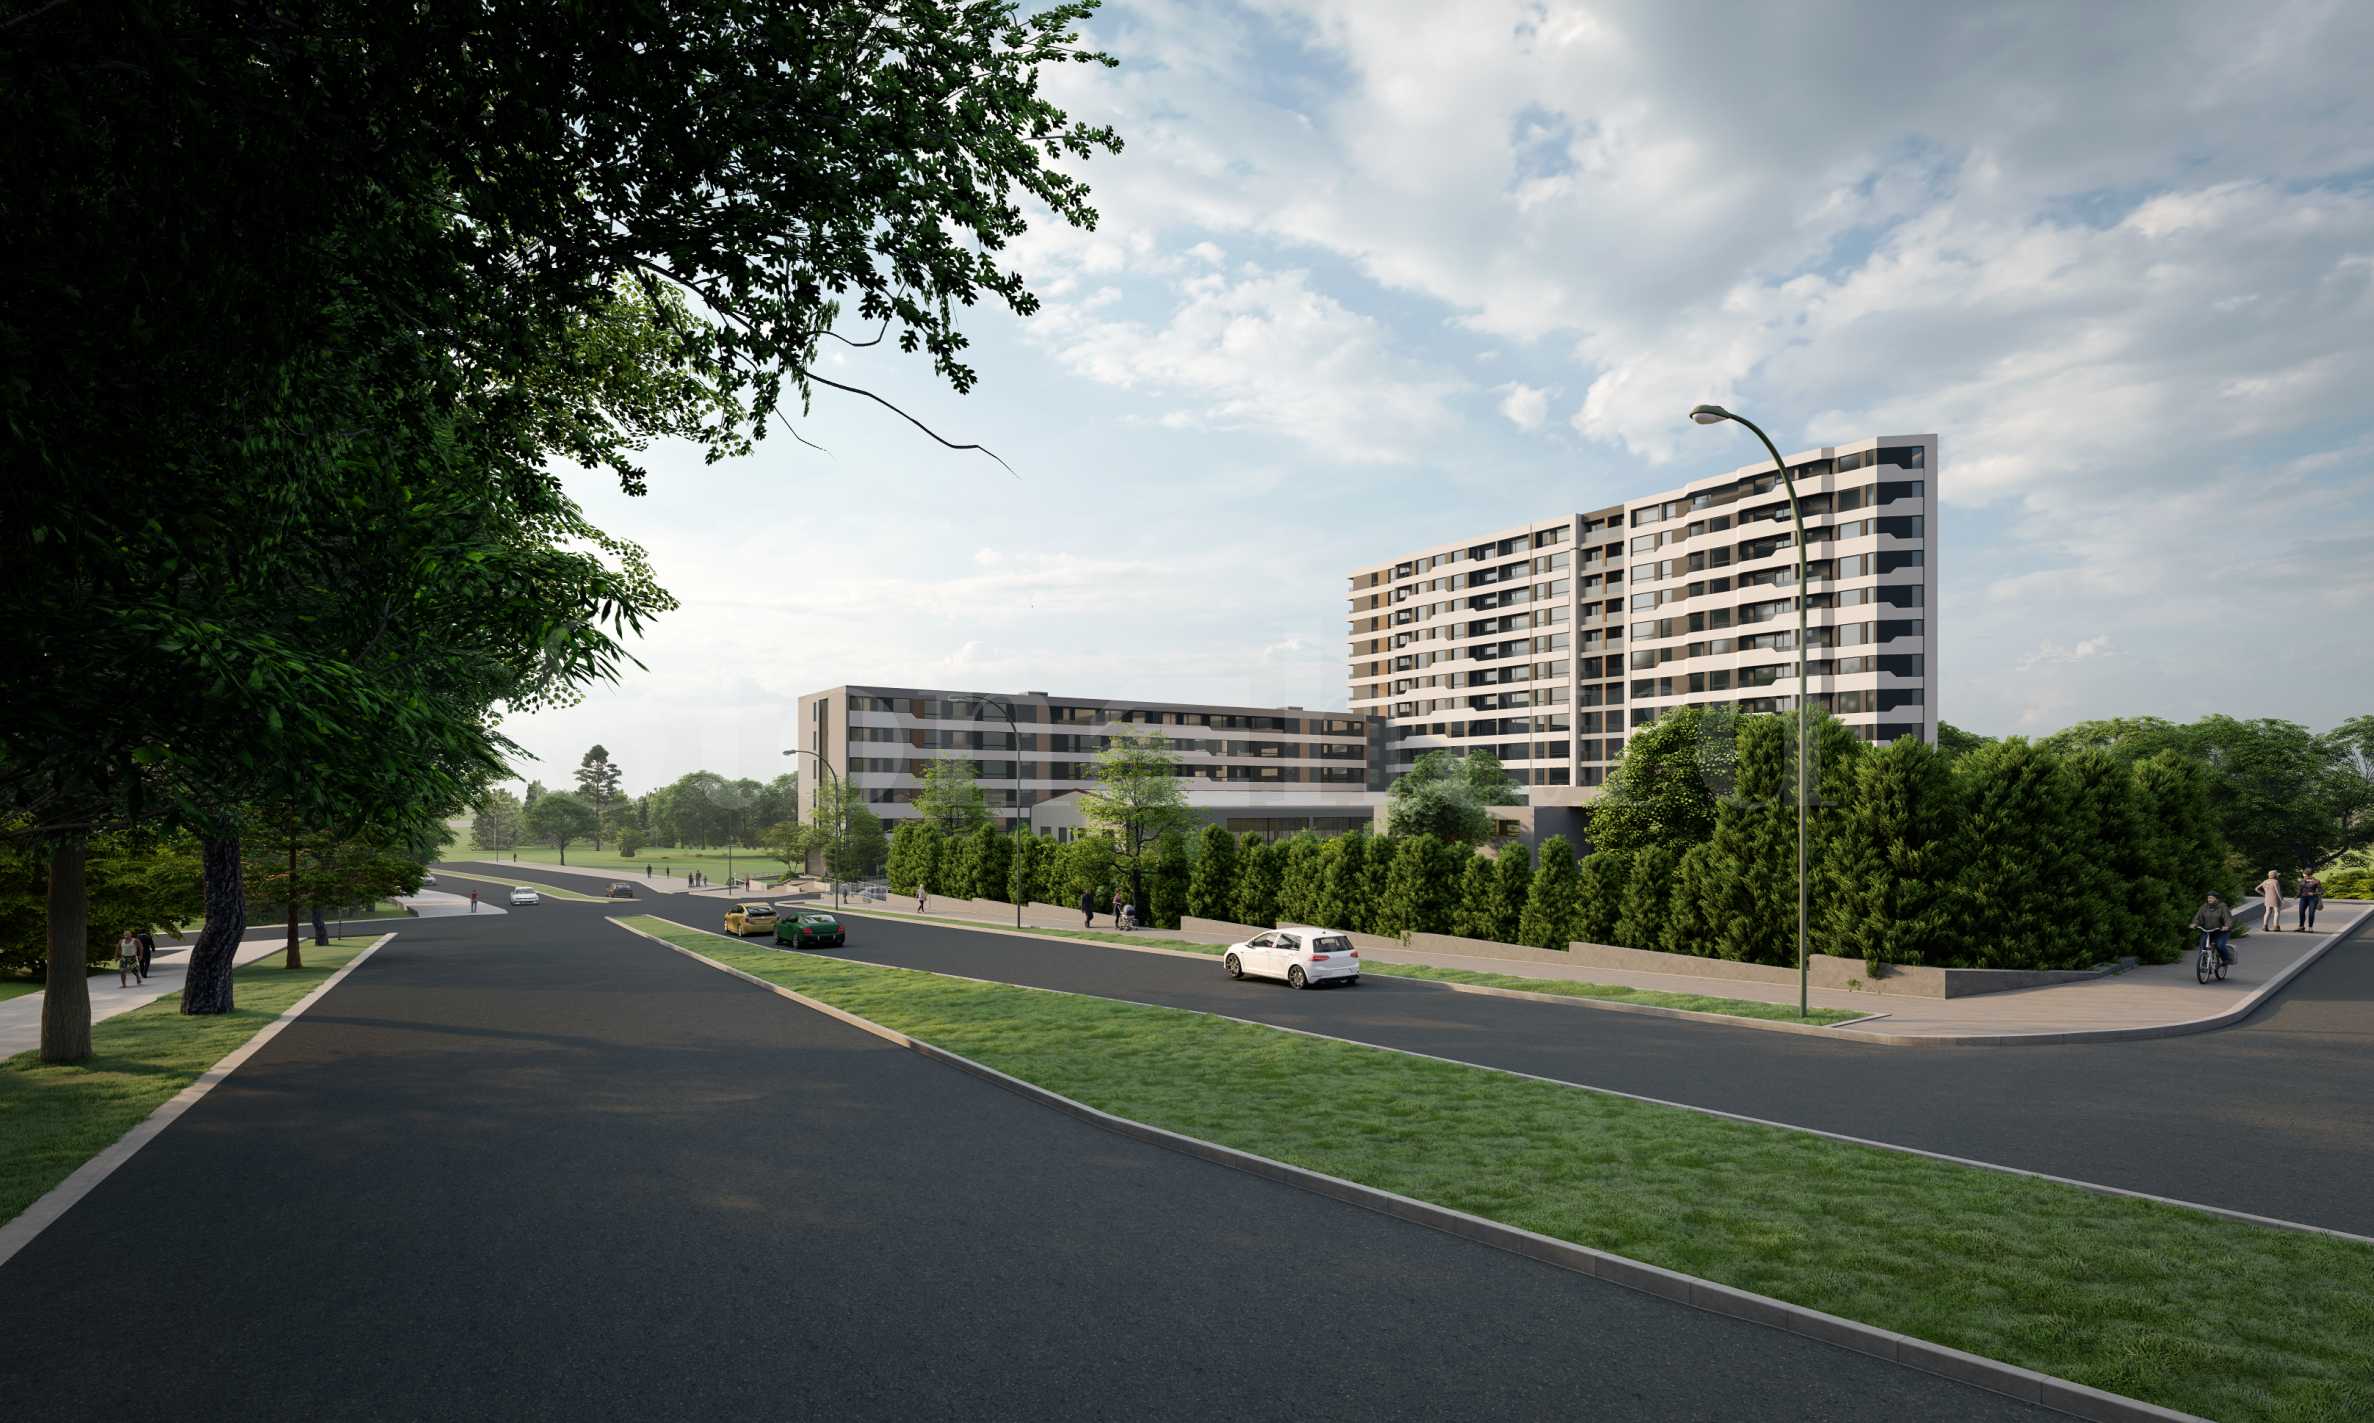 Апартаменти в две нови сгради в паркова среда2 - Stonehard